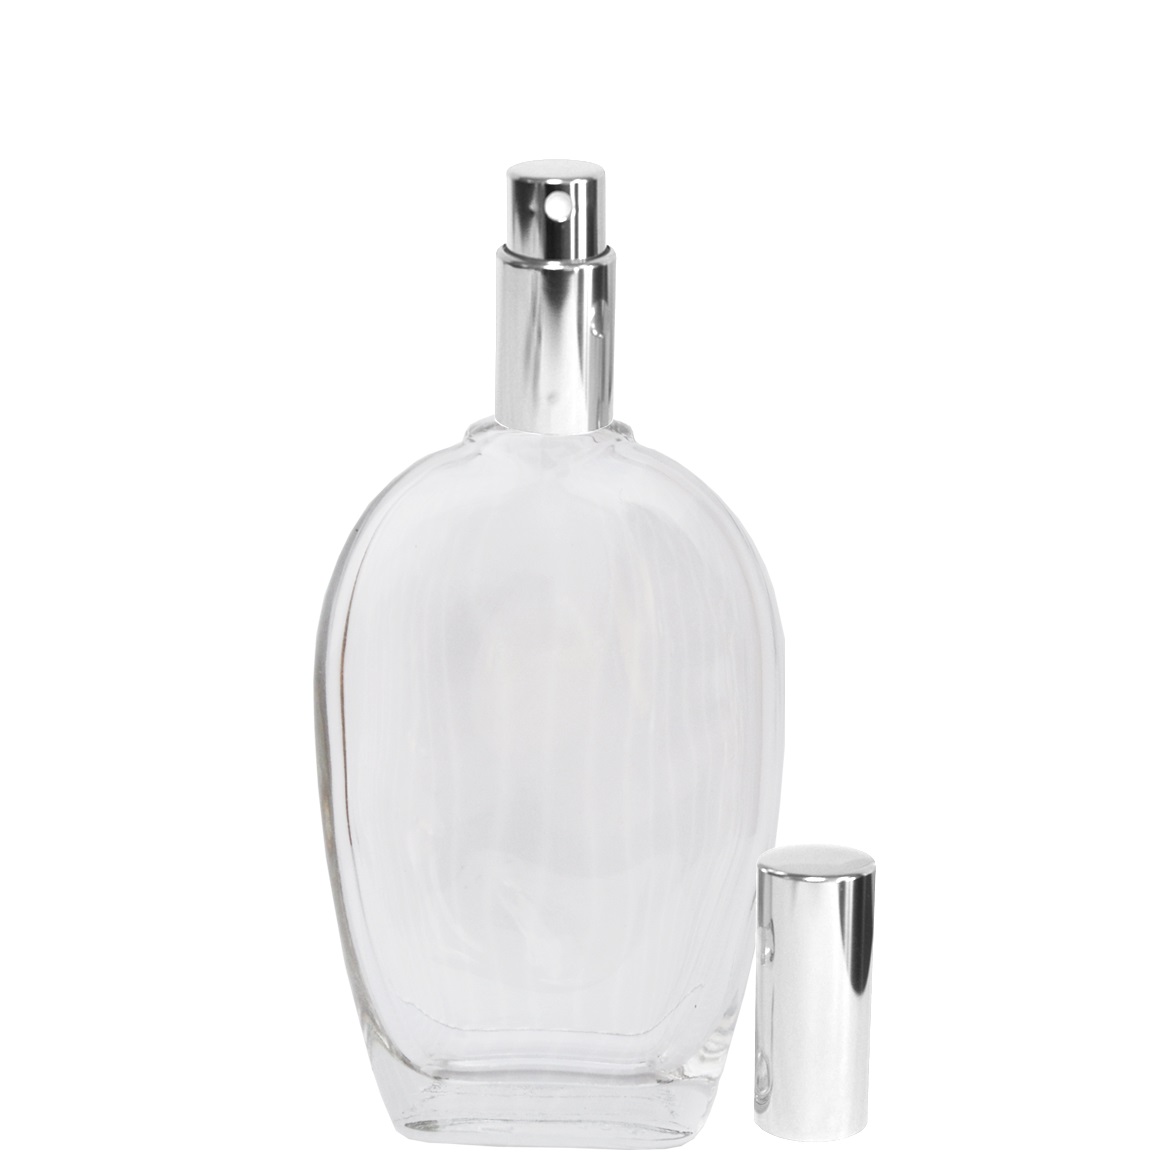 Flacon en verre vide - Différents designs de flacon de parfum Nicolaï